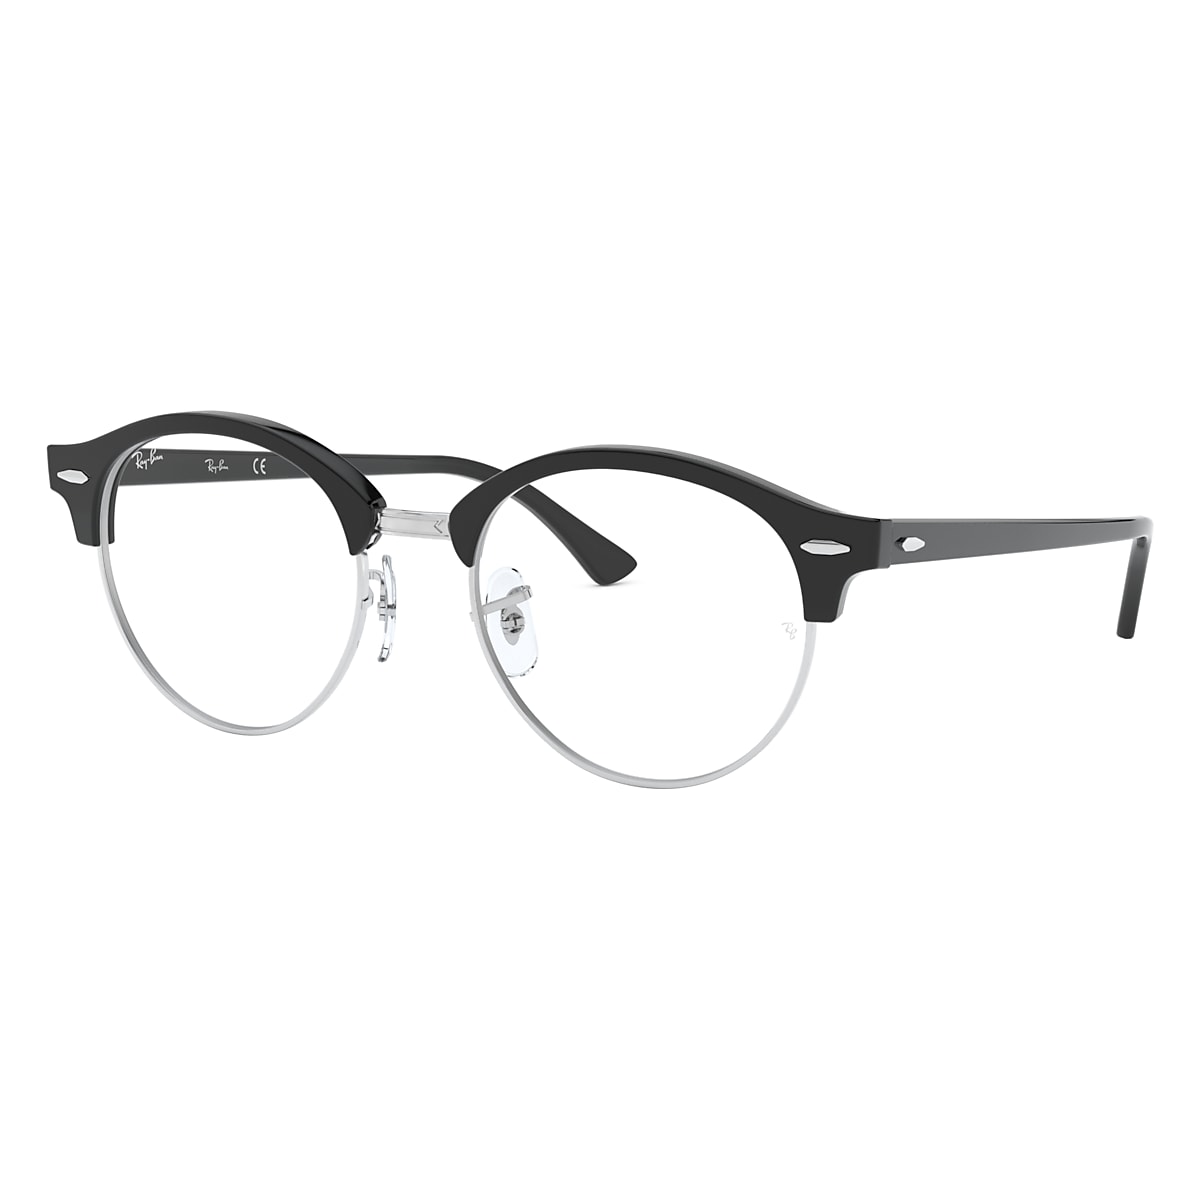 servet Typisch Bemiddelaar Clubround Optics Eyeglasses with Black Frame - RB4246V | Ray-Ban® US